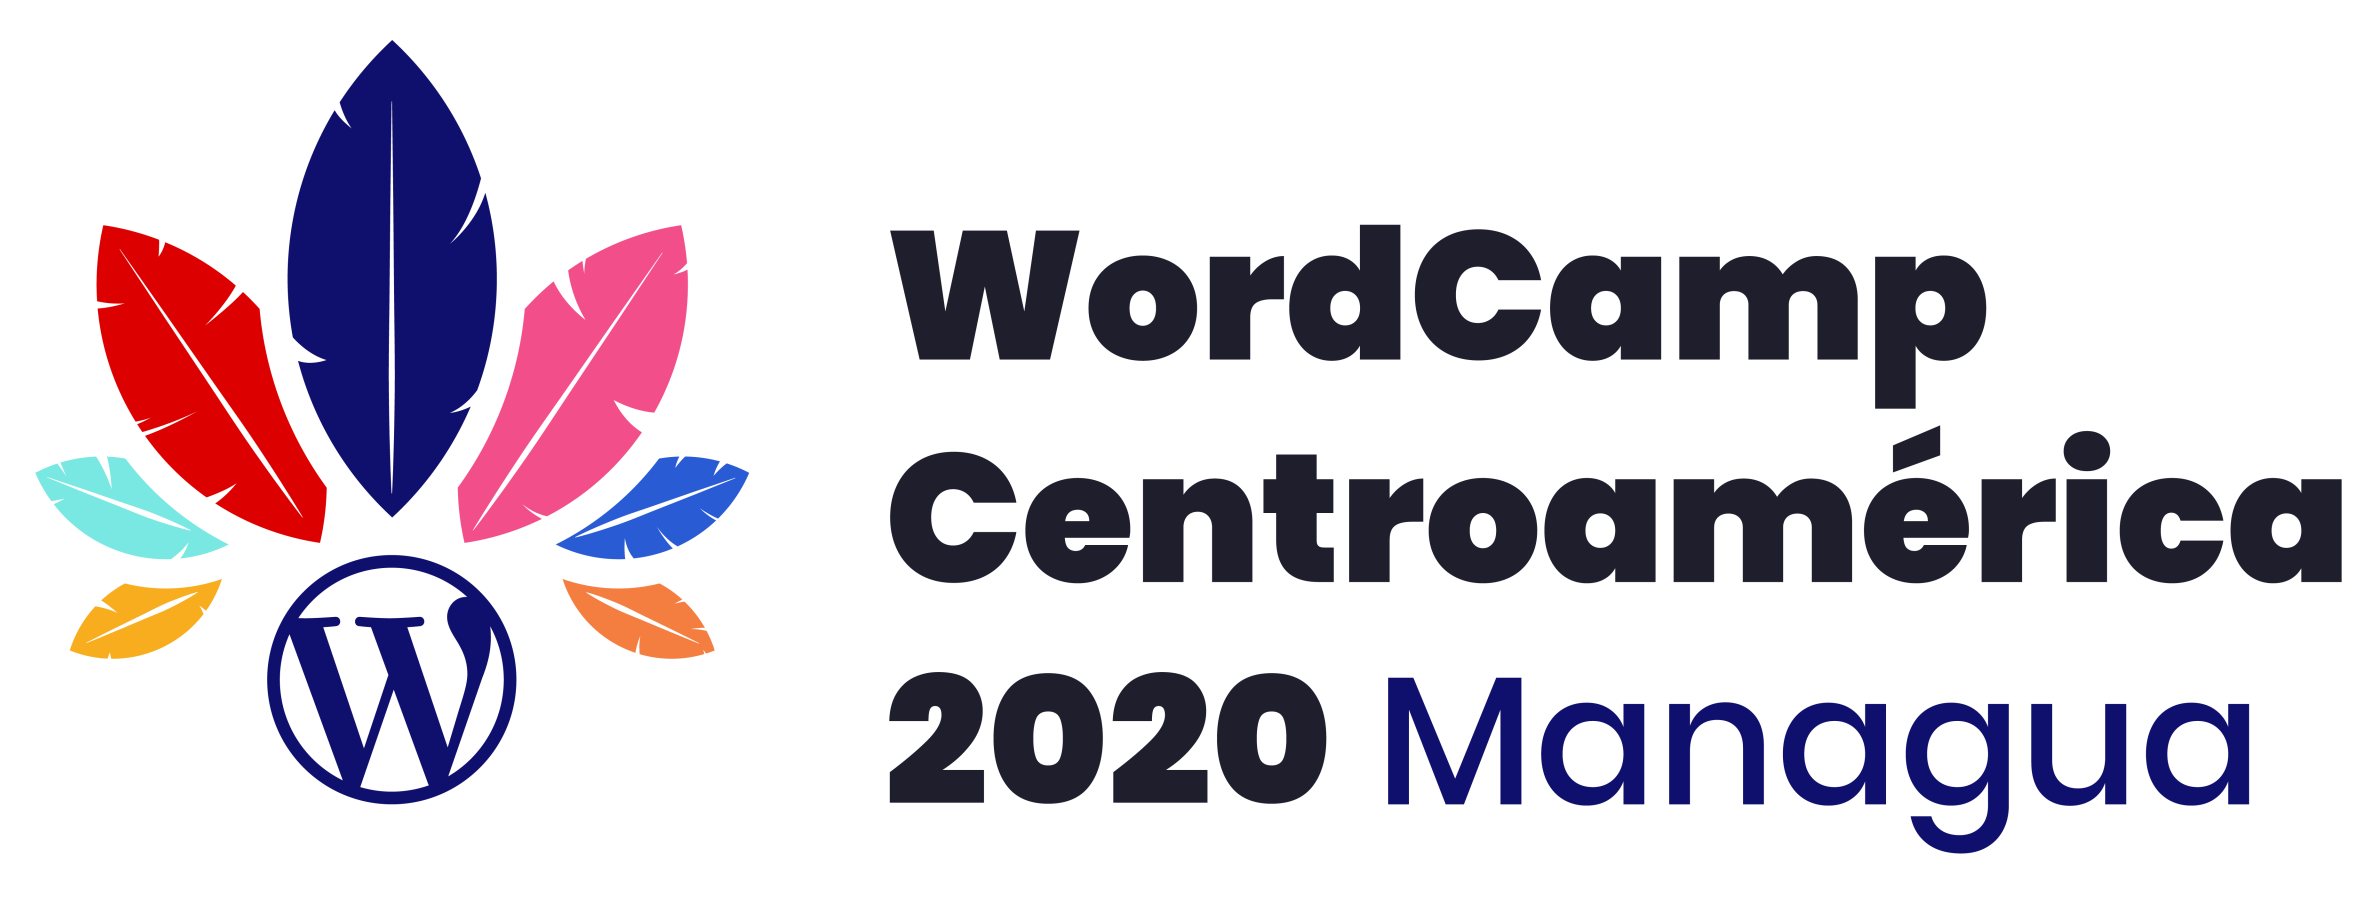 WordCamp Centroamérica